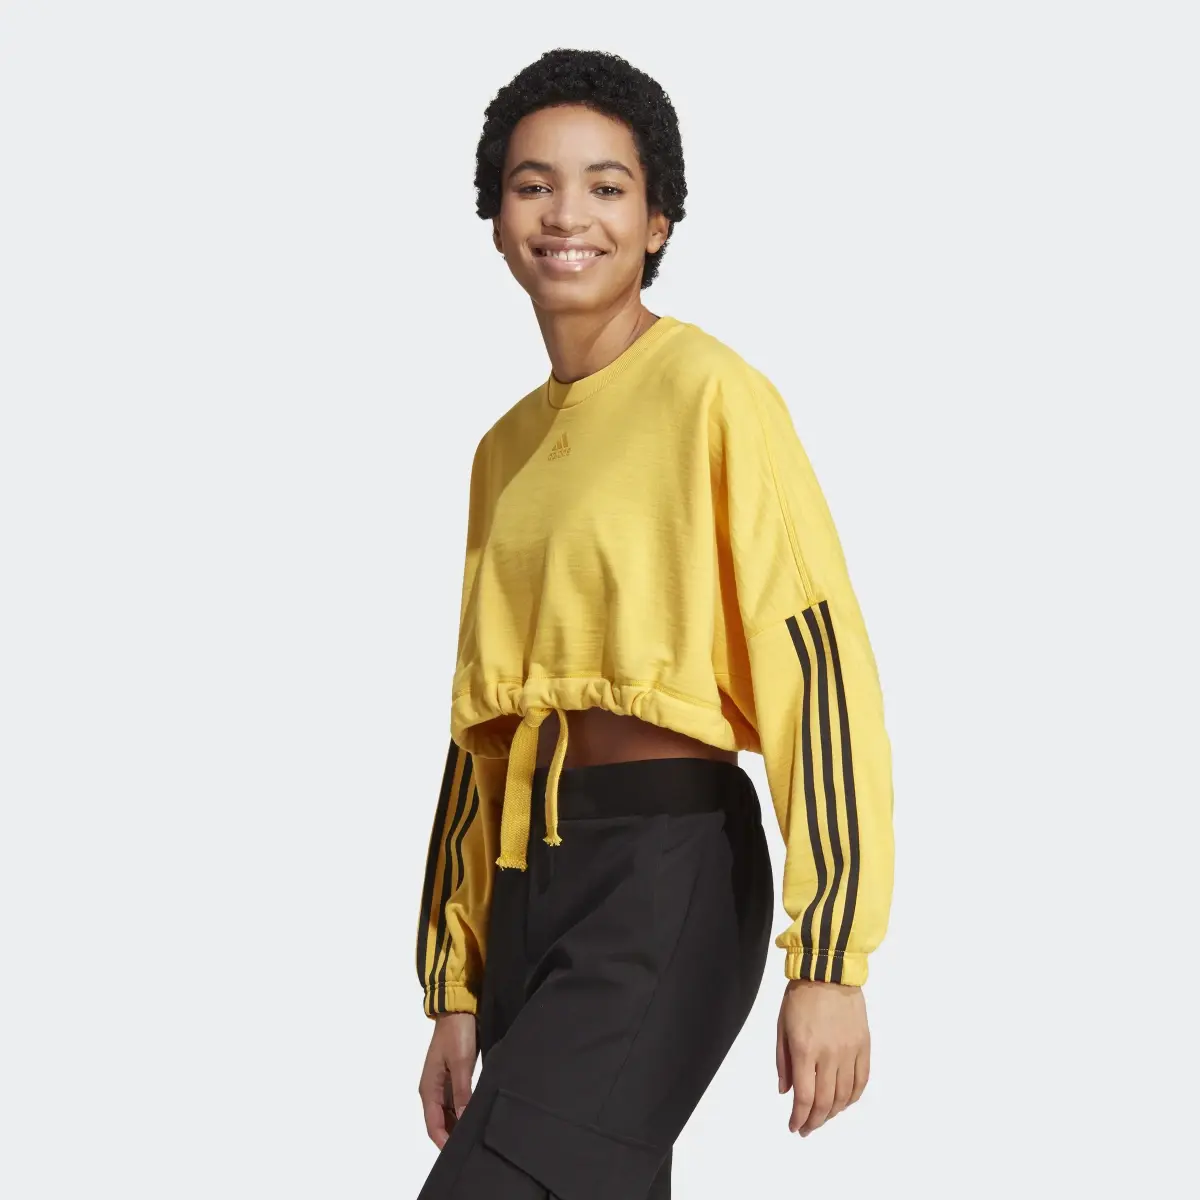 Adidas Dance Crop Versatile Sweatshirt. 2